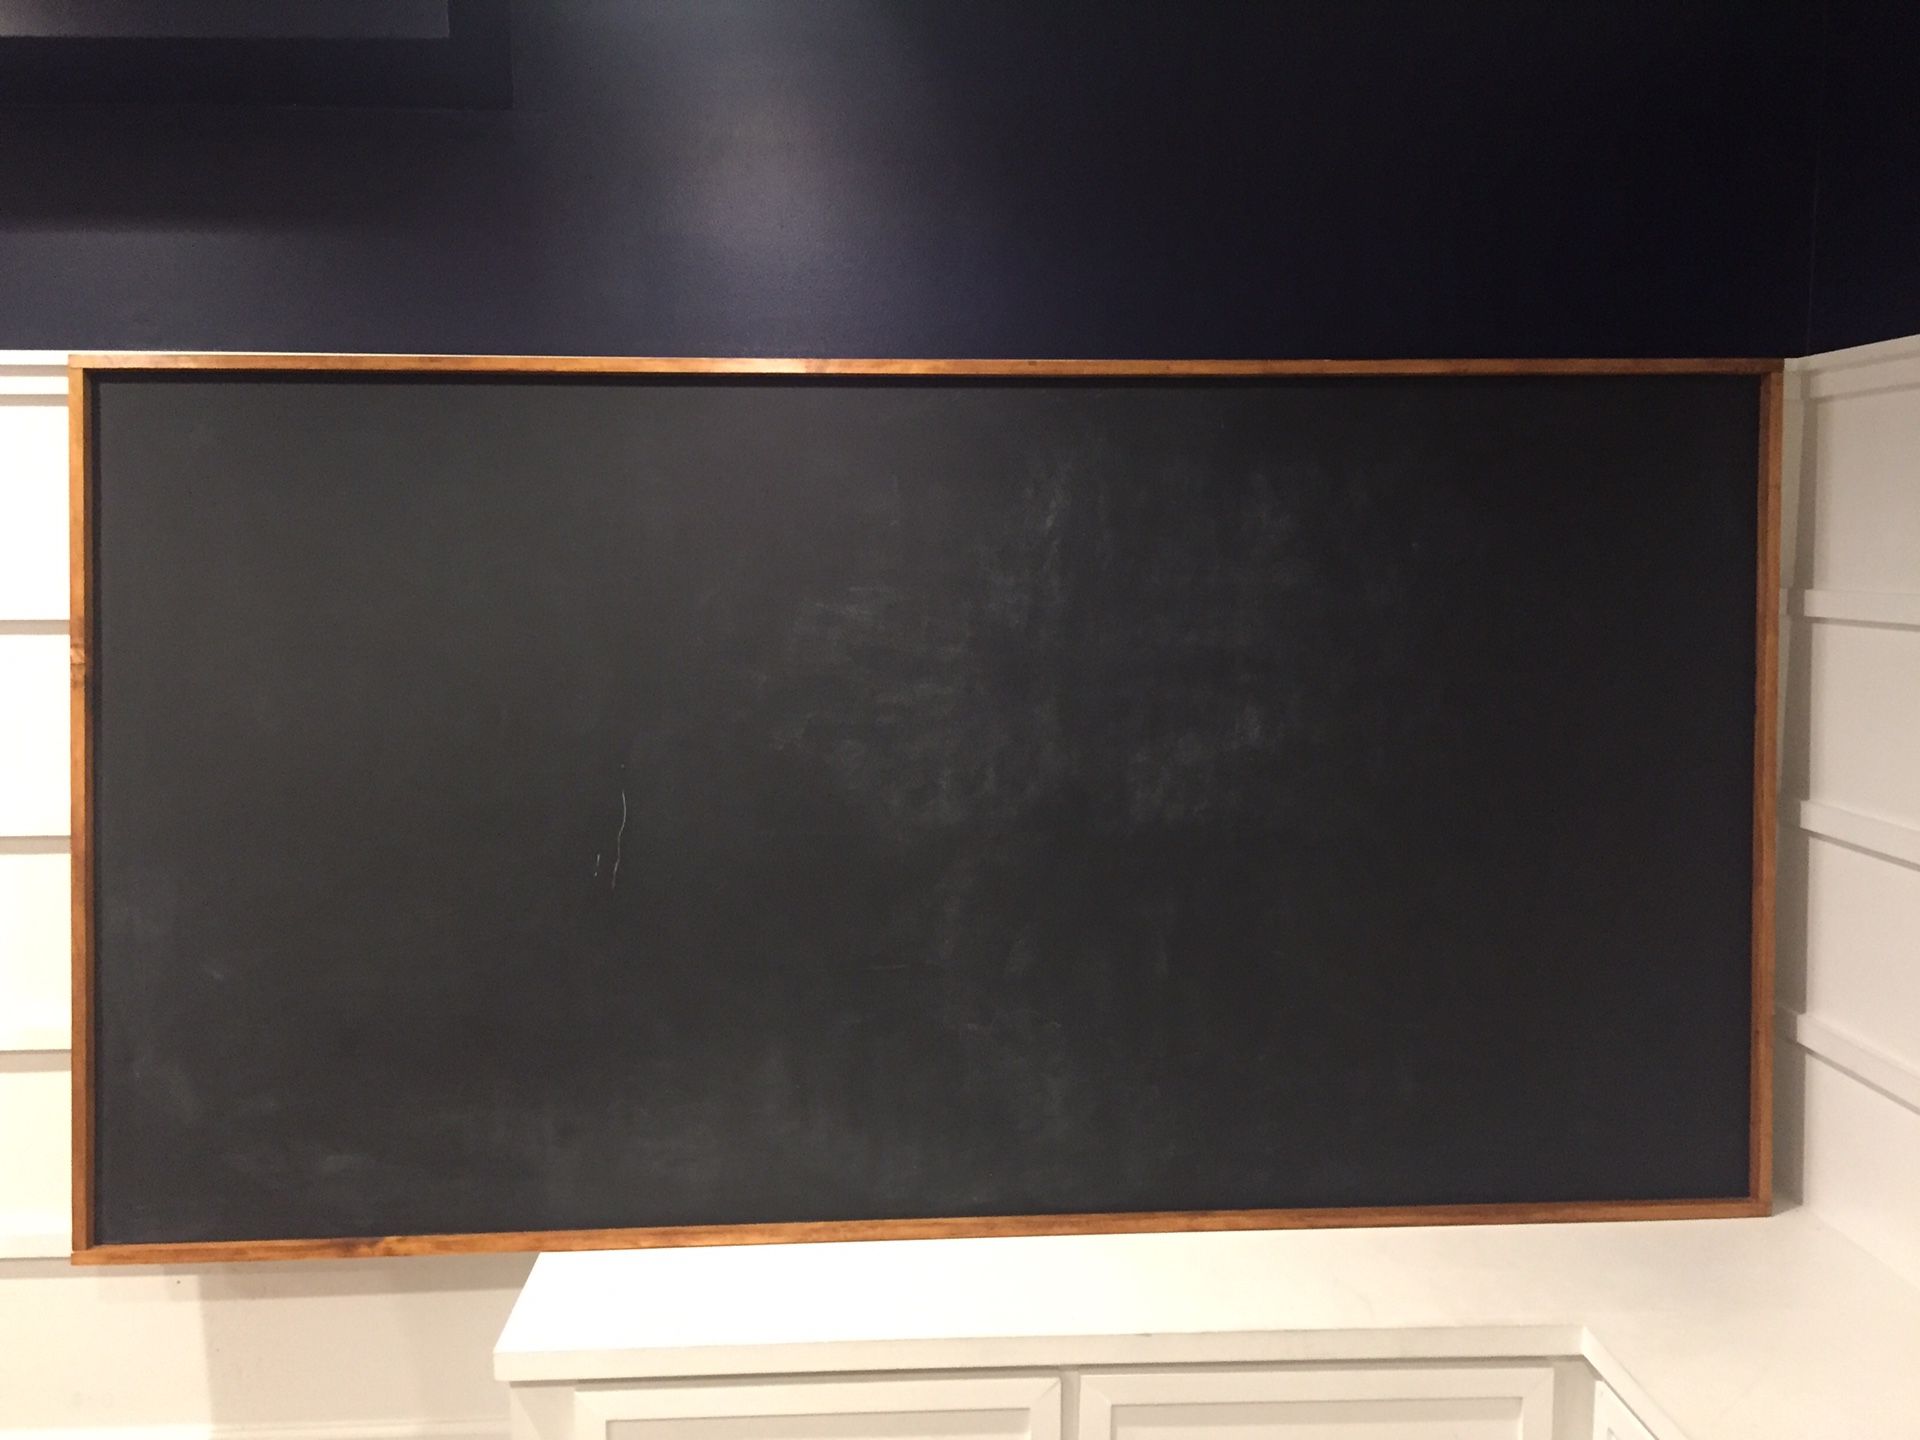 Custom framed magnetic chalkboard